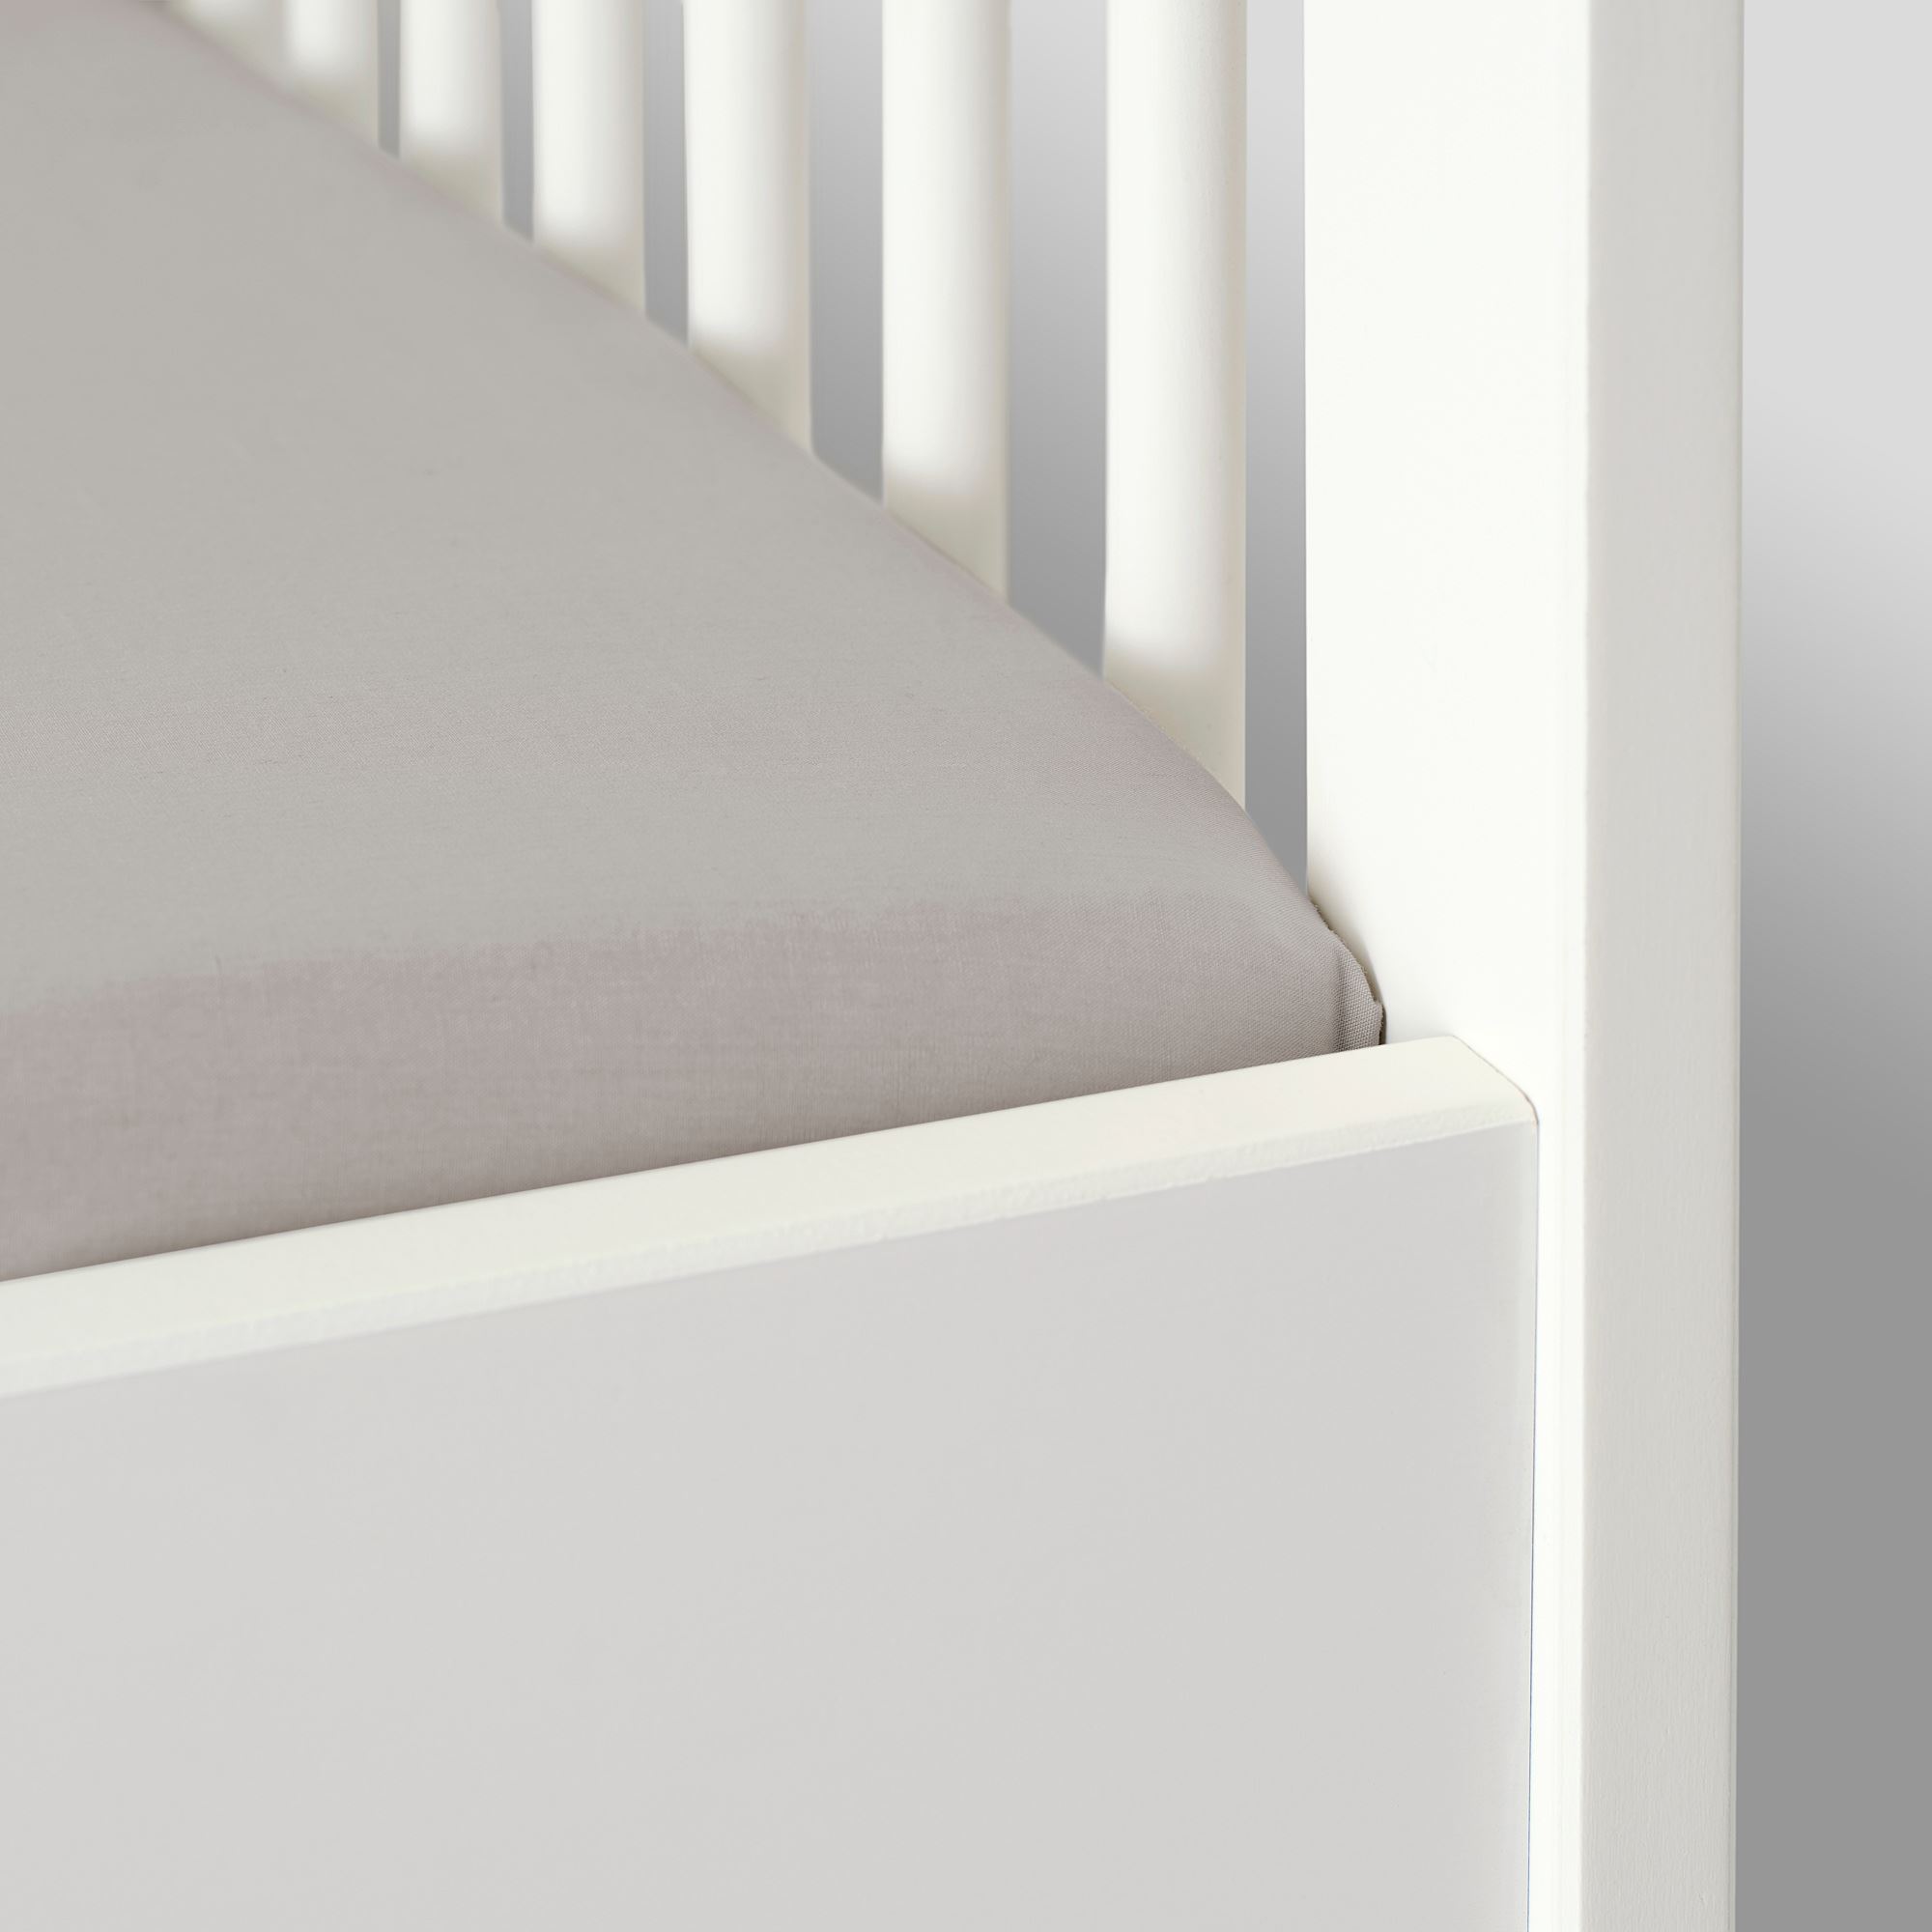 LENAST lastikli bebek çarşafı beyazgri 60x120 cm IKEA IKEA Çocuk